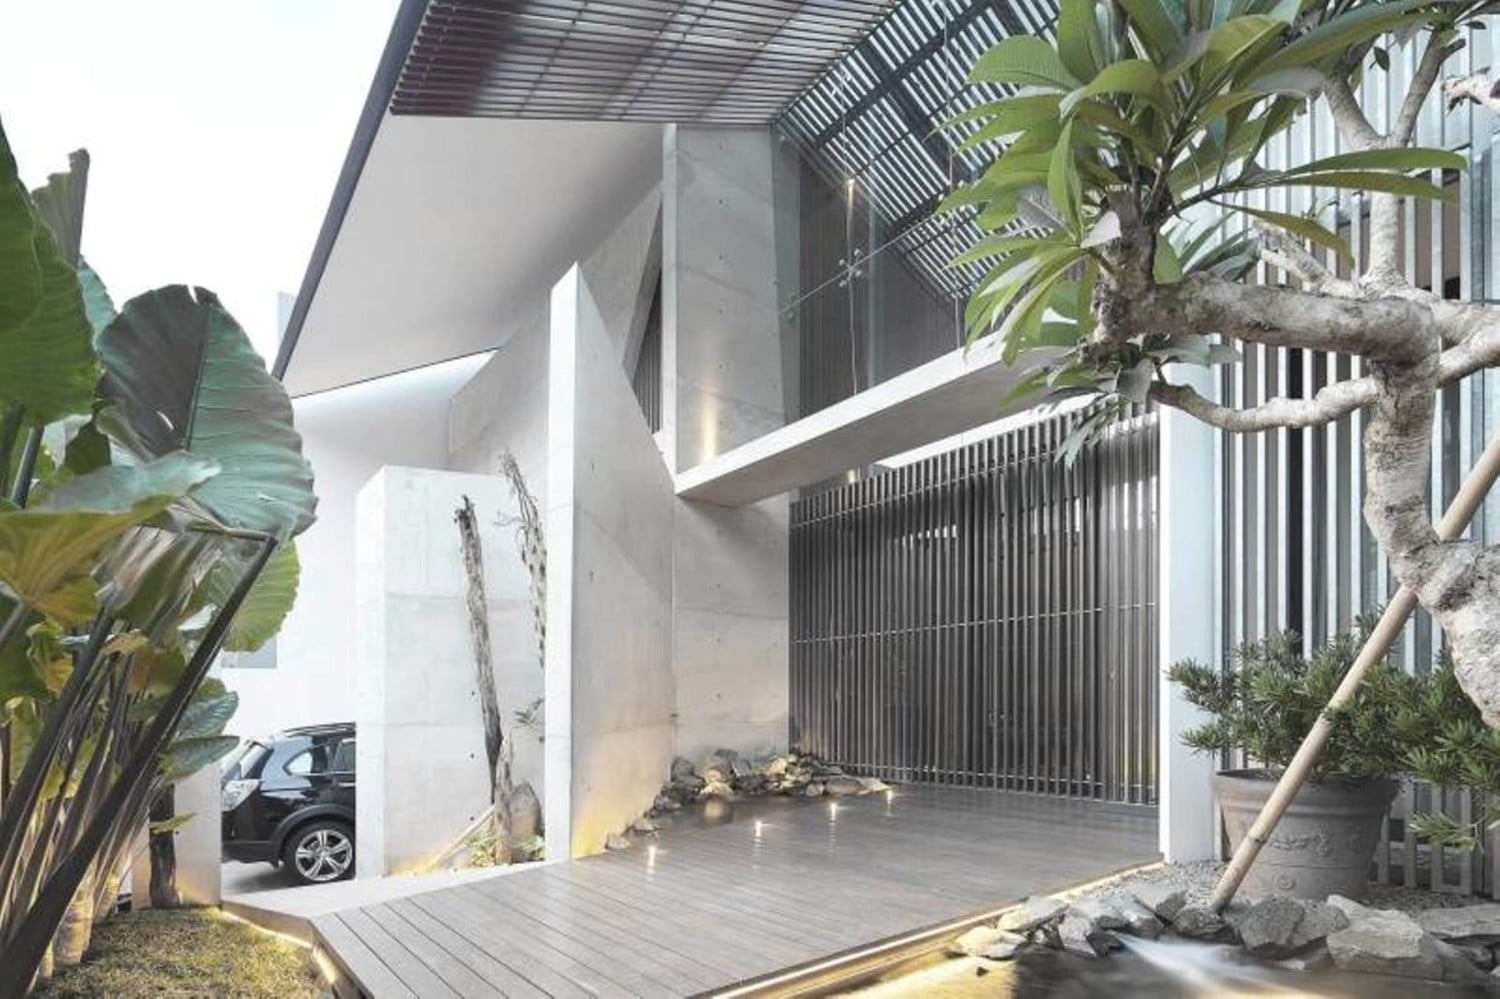 88 Ragam Seni Contoh Bangunan Rumah Minimalis Terbaru 2020